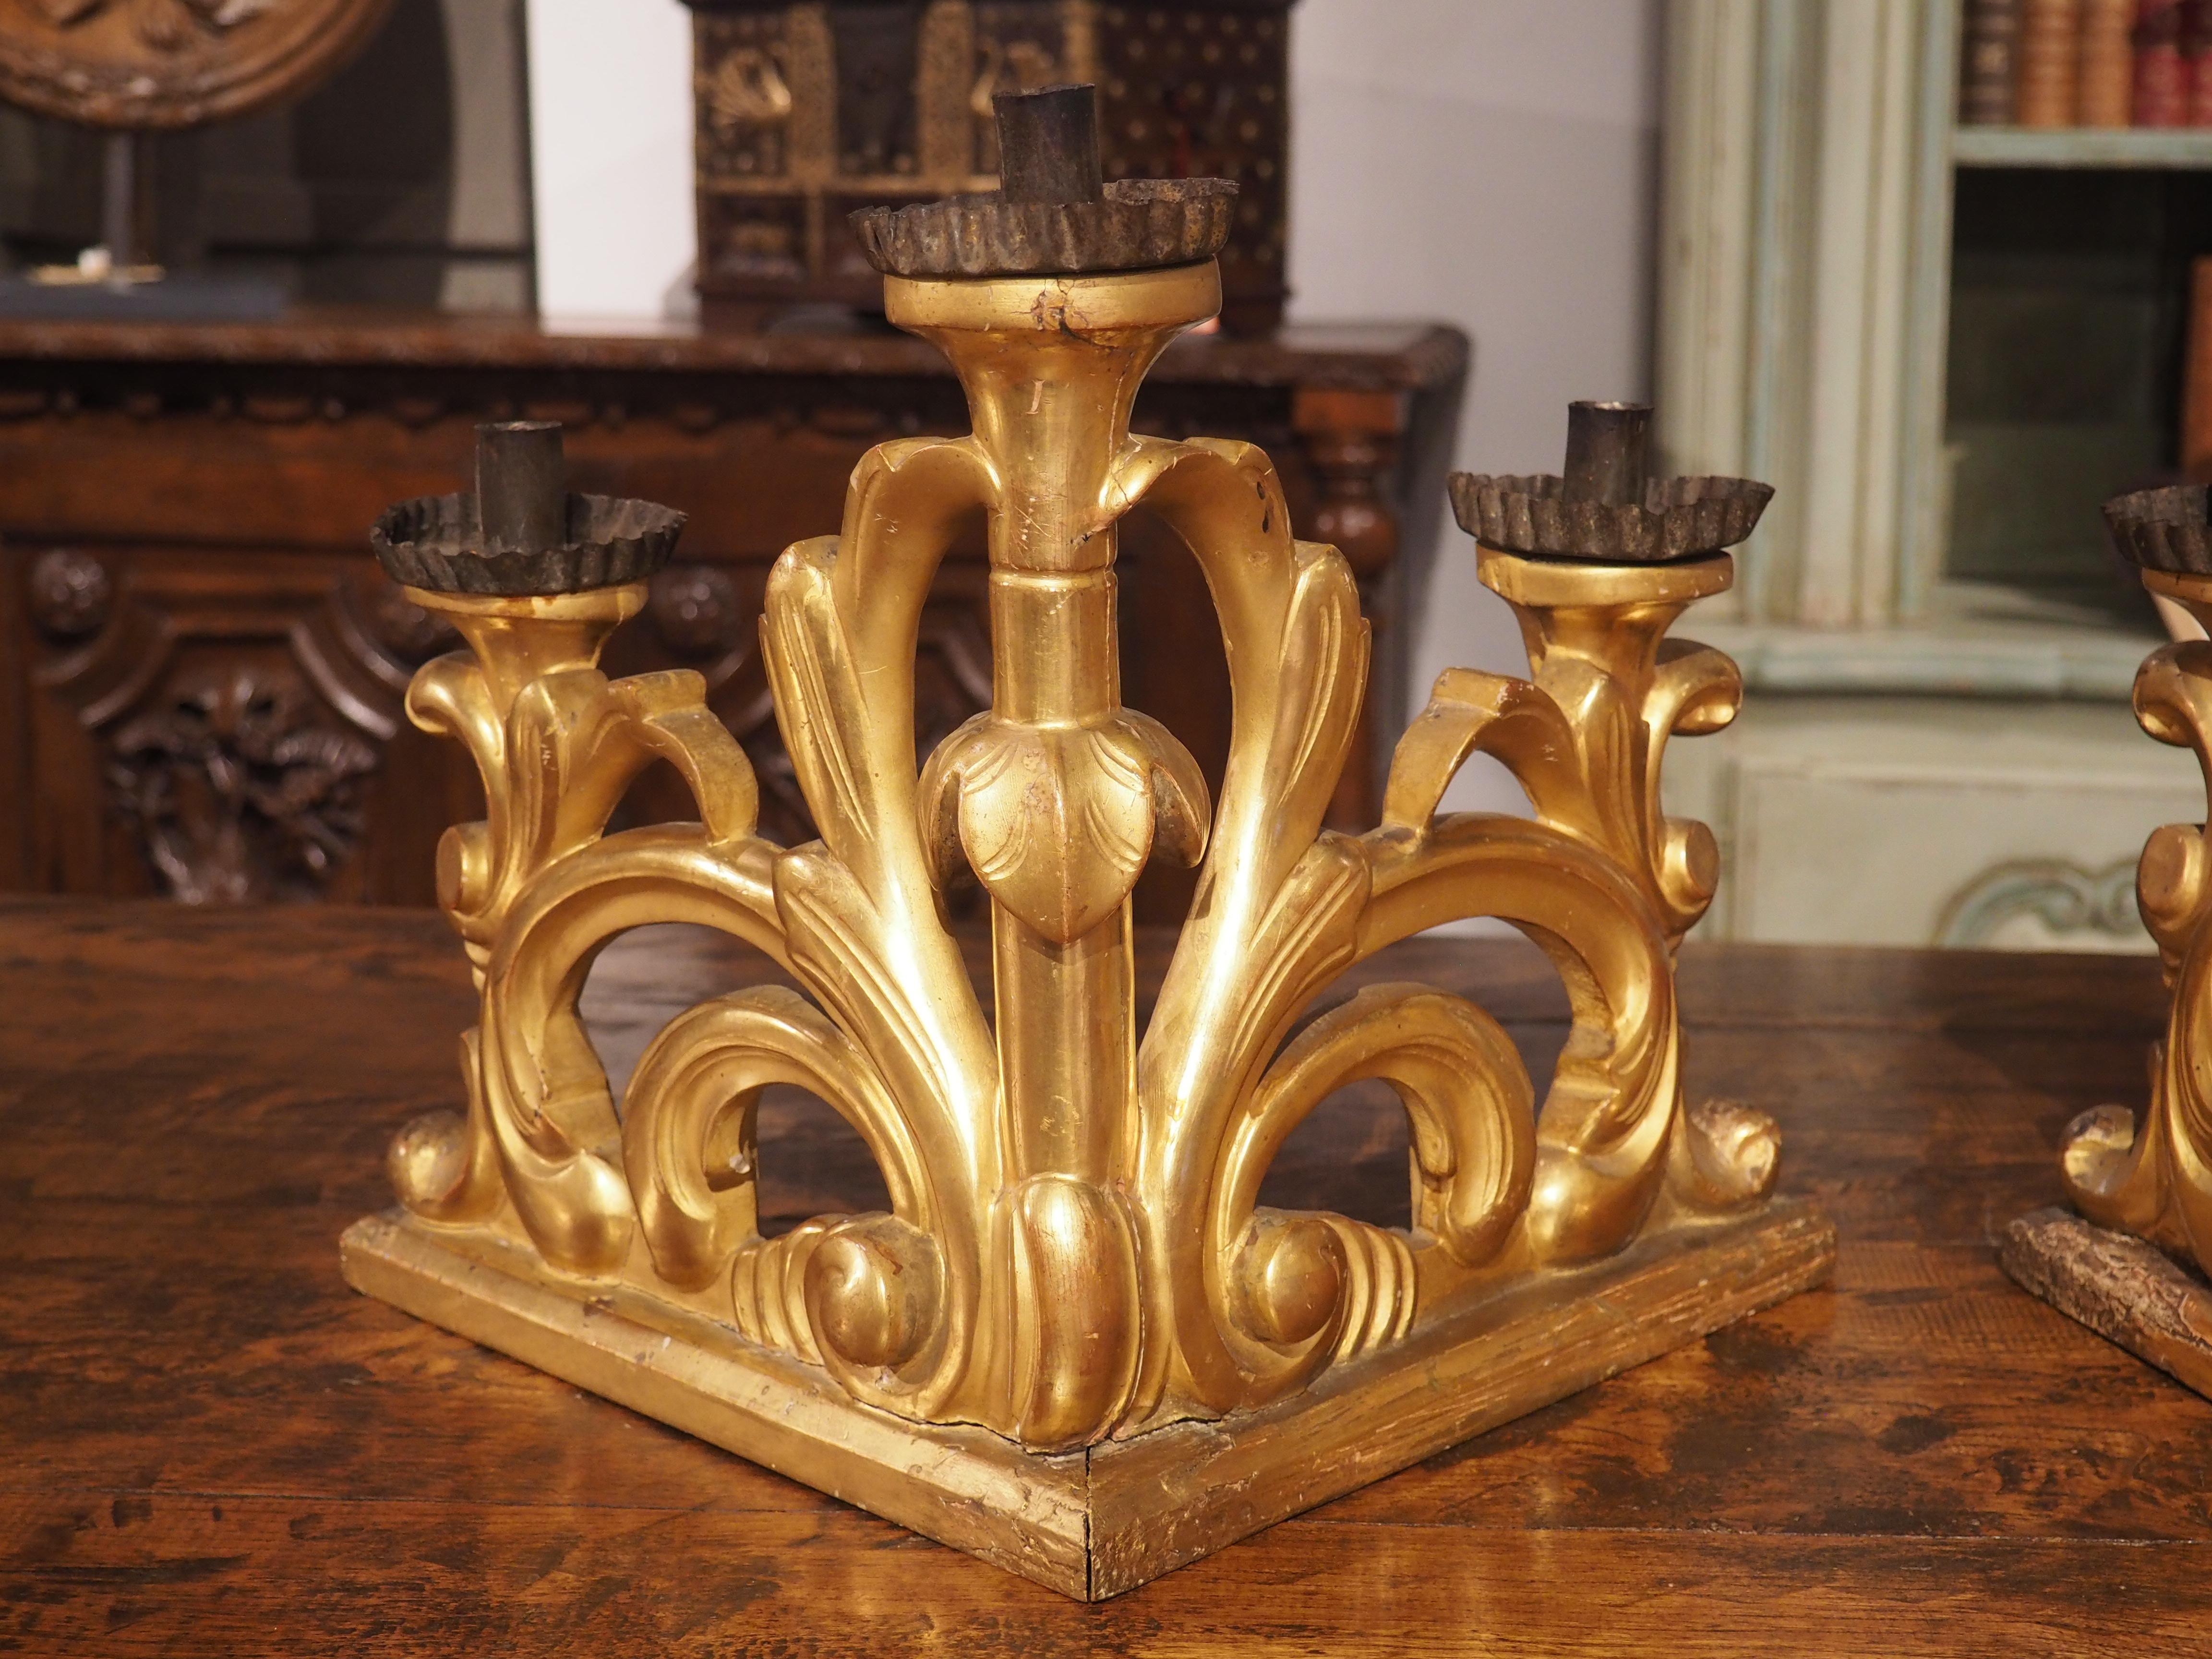 Avec leurs bases à angle droit et leurs lobes descendants, cette paire de chandeliers italiens en bois doré constitue une source de lumière unique. Sculptés à la main à la fin du XVIIIe siècle, ces chandeliers de la période baroque présentent une